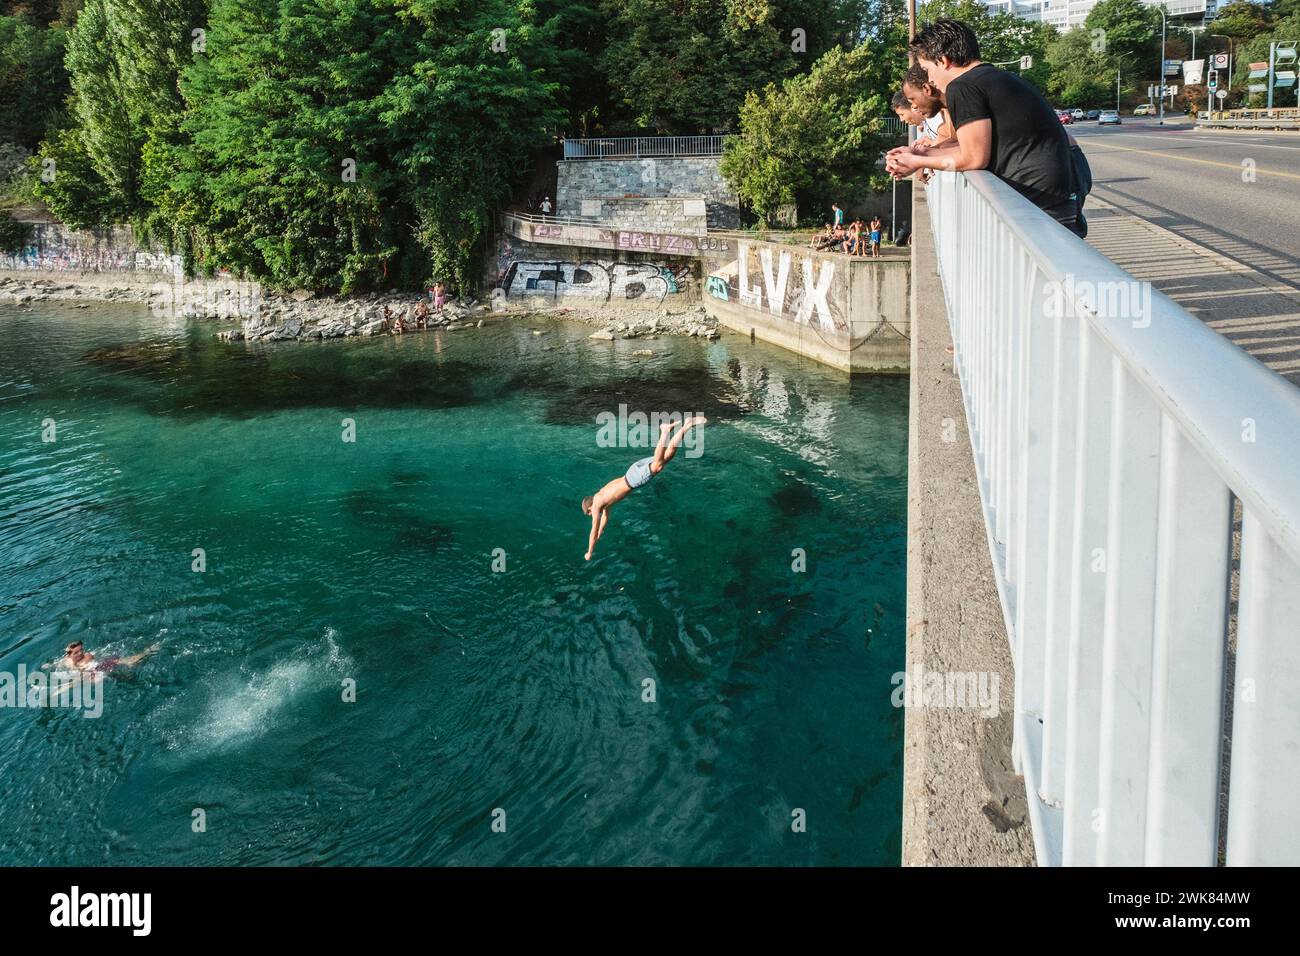 Scena estiva di un uomo che salta da un ponte nel fiume Rodano a Ginevra, Svizzera Foto Stock